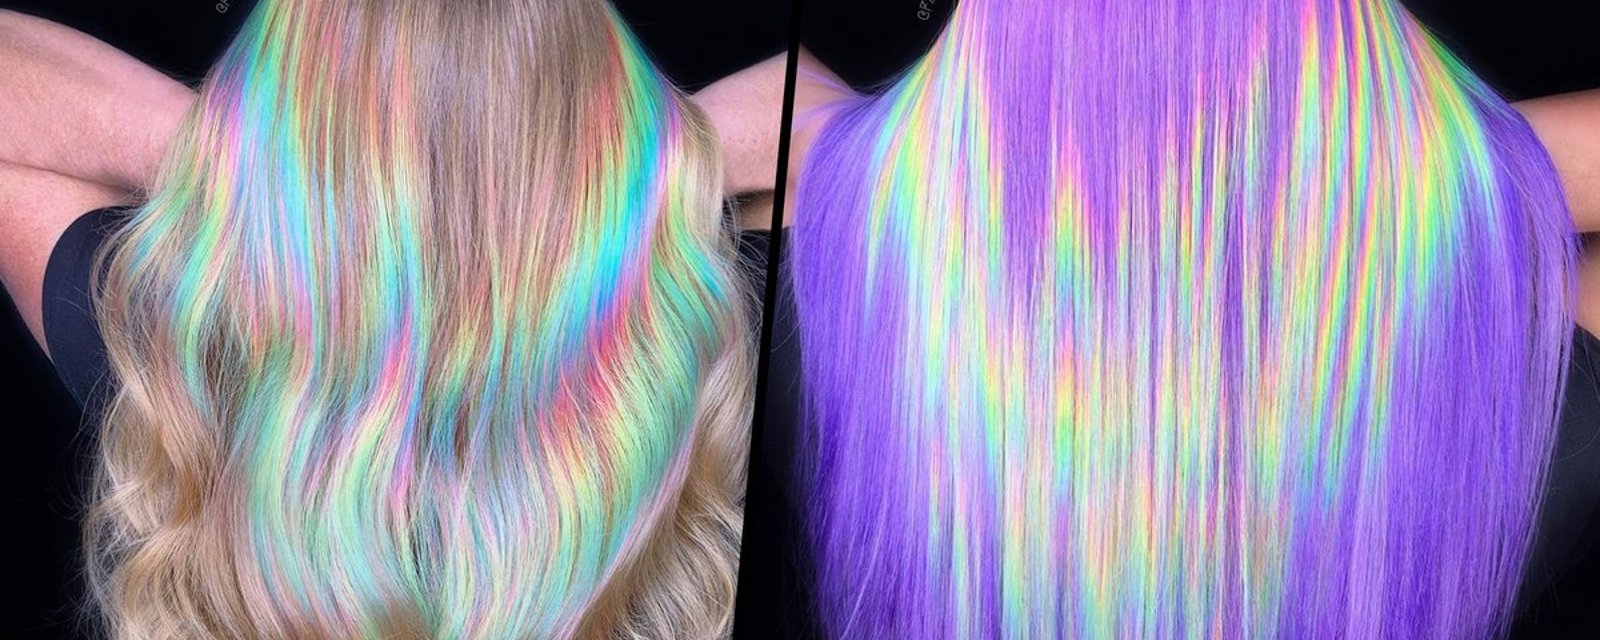 La prochaine tendance capillaire pour 2020: les cheveux holographiques! 